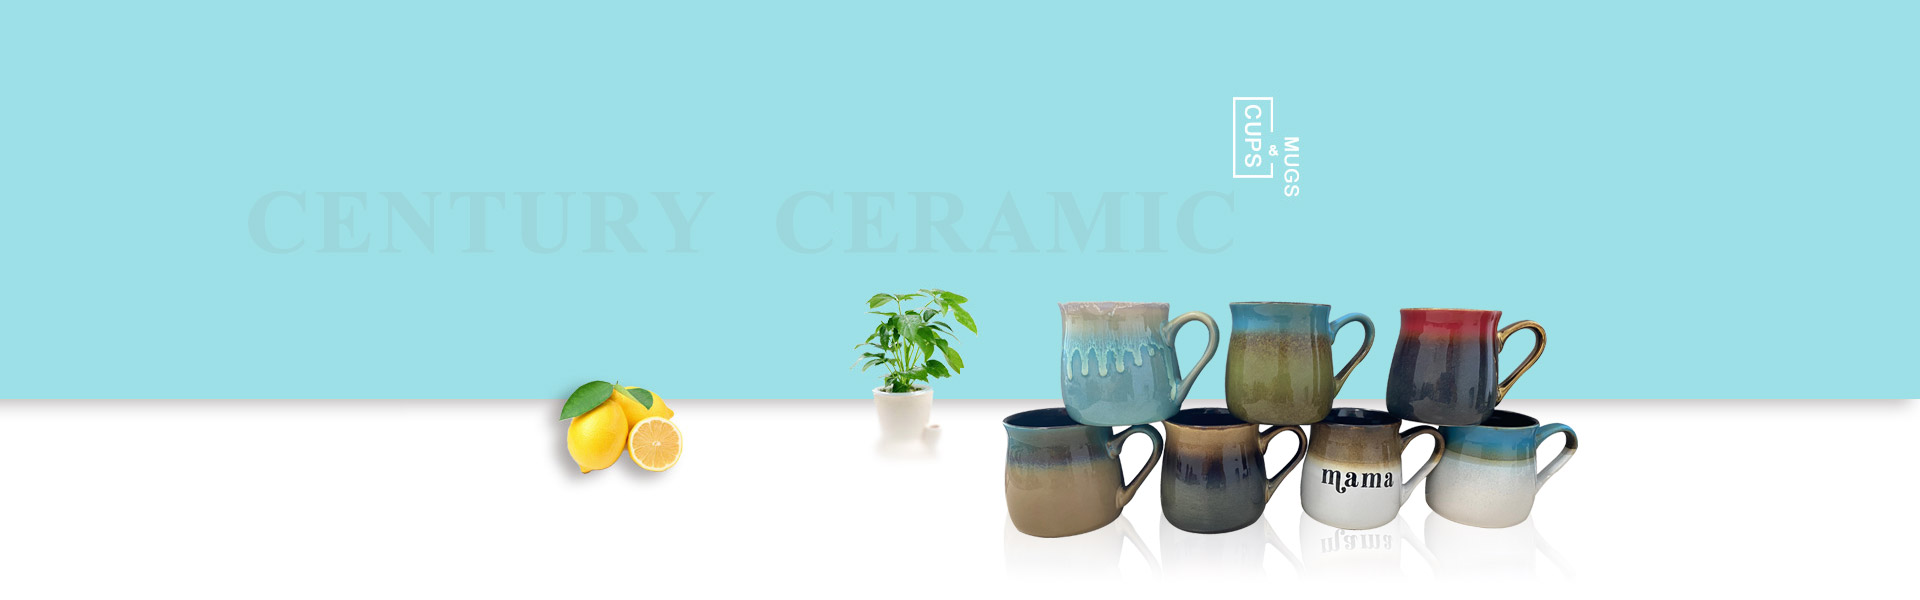 century ceramic